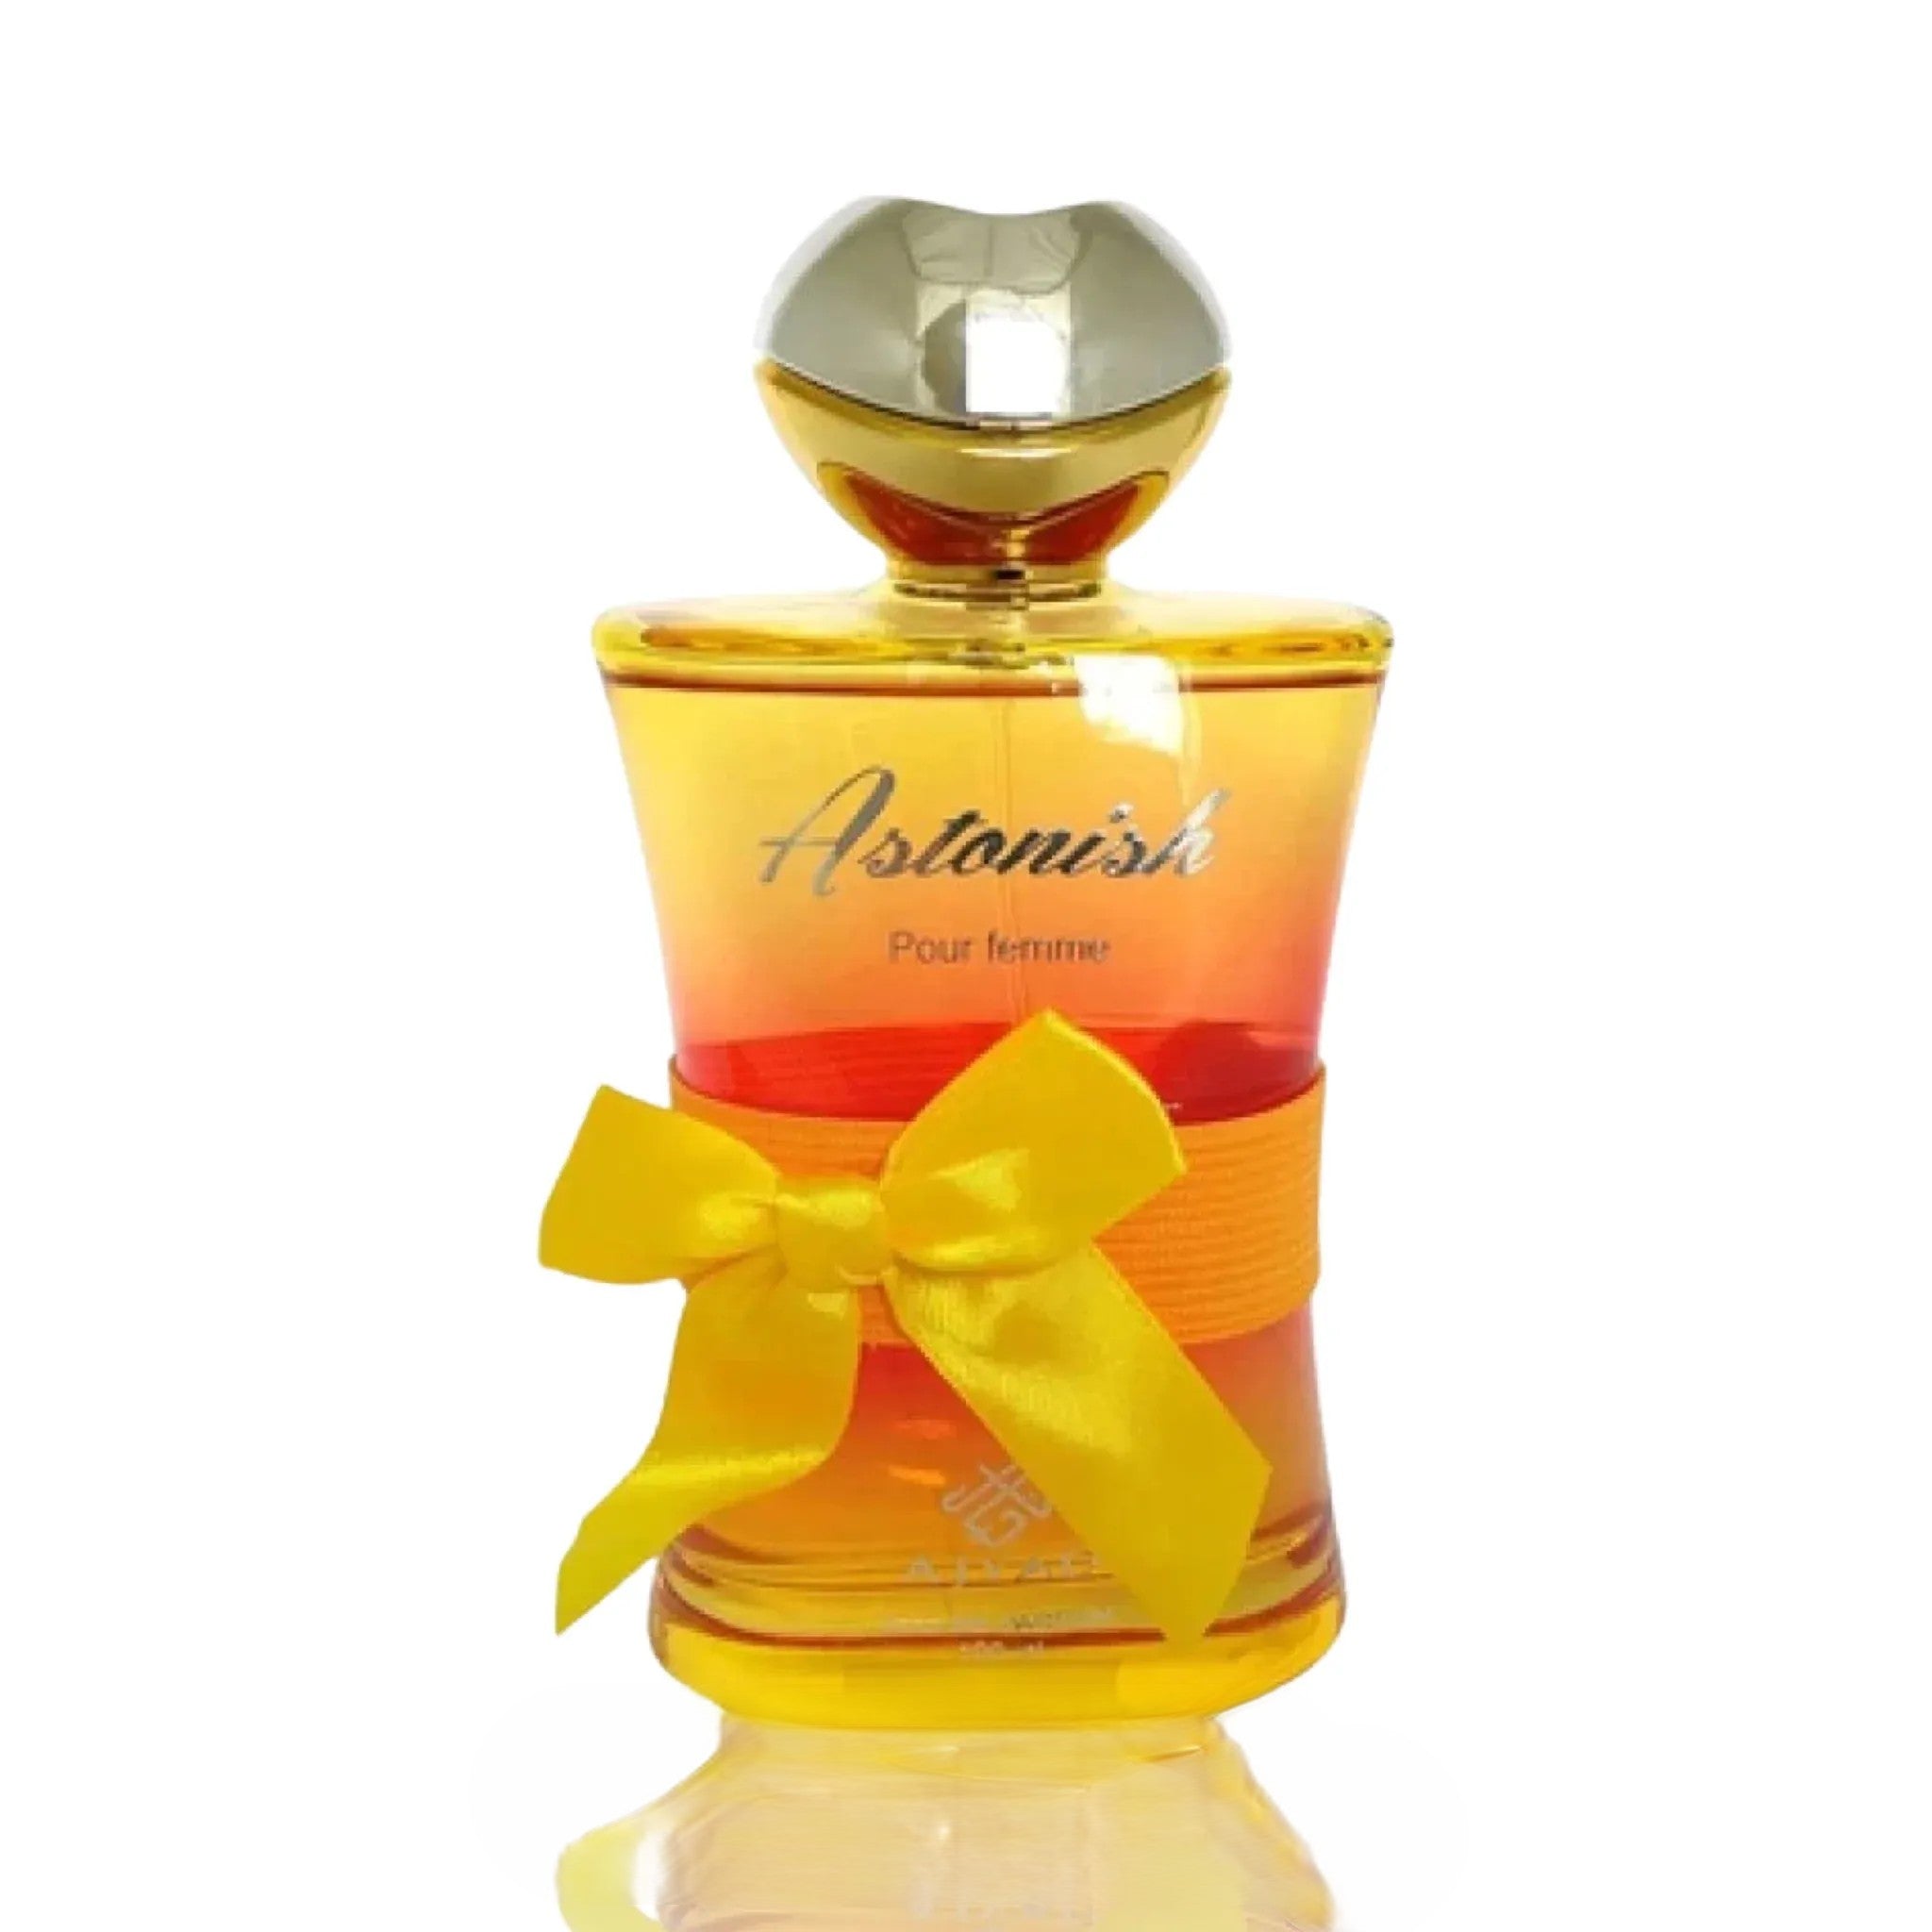 Astonish Pour Femme | Eau De Perfume 100ml | by Ajyad